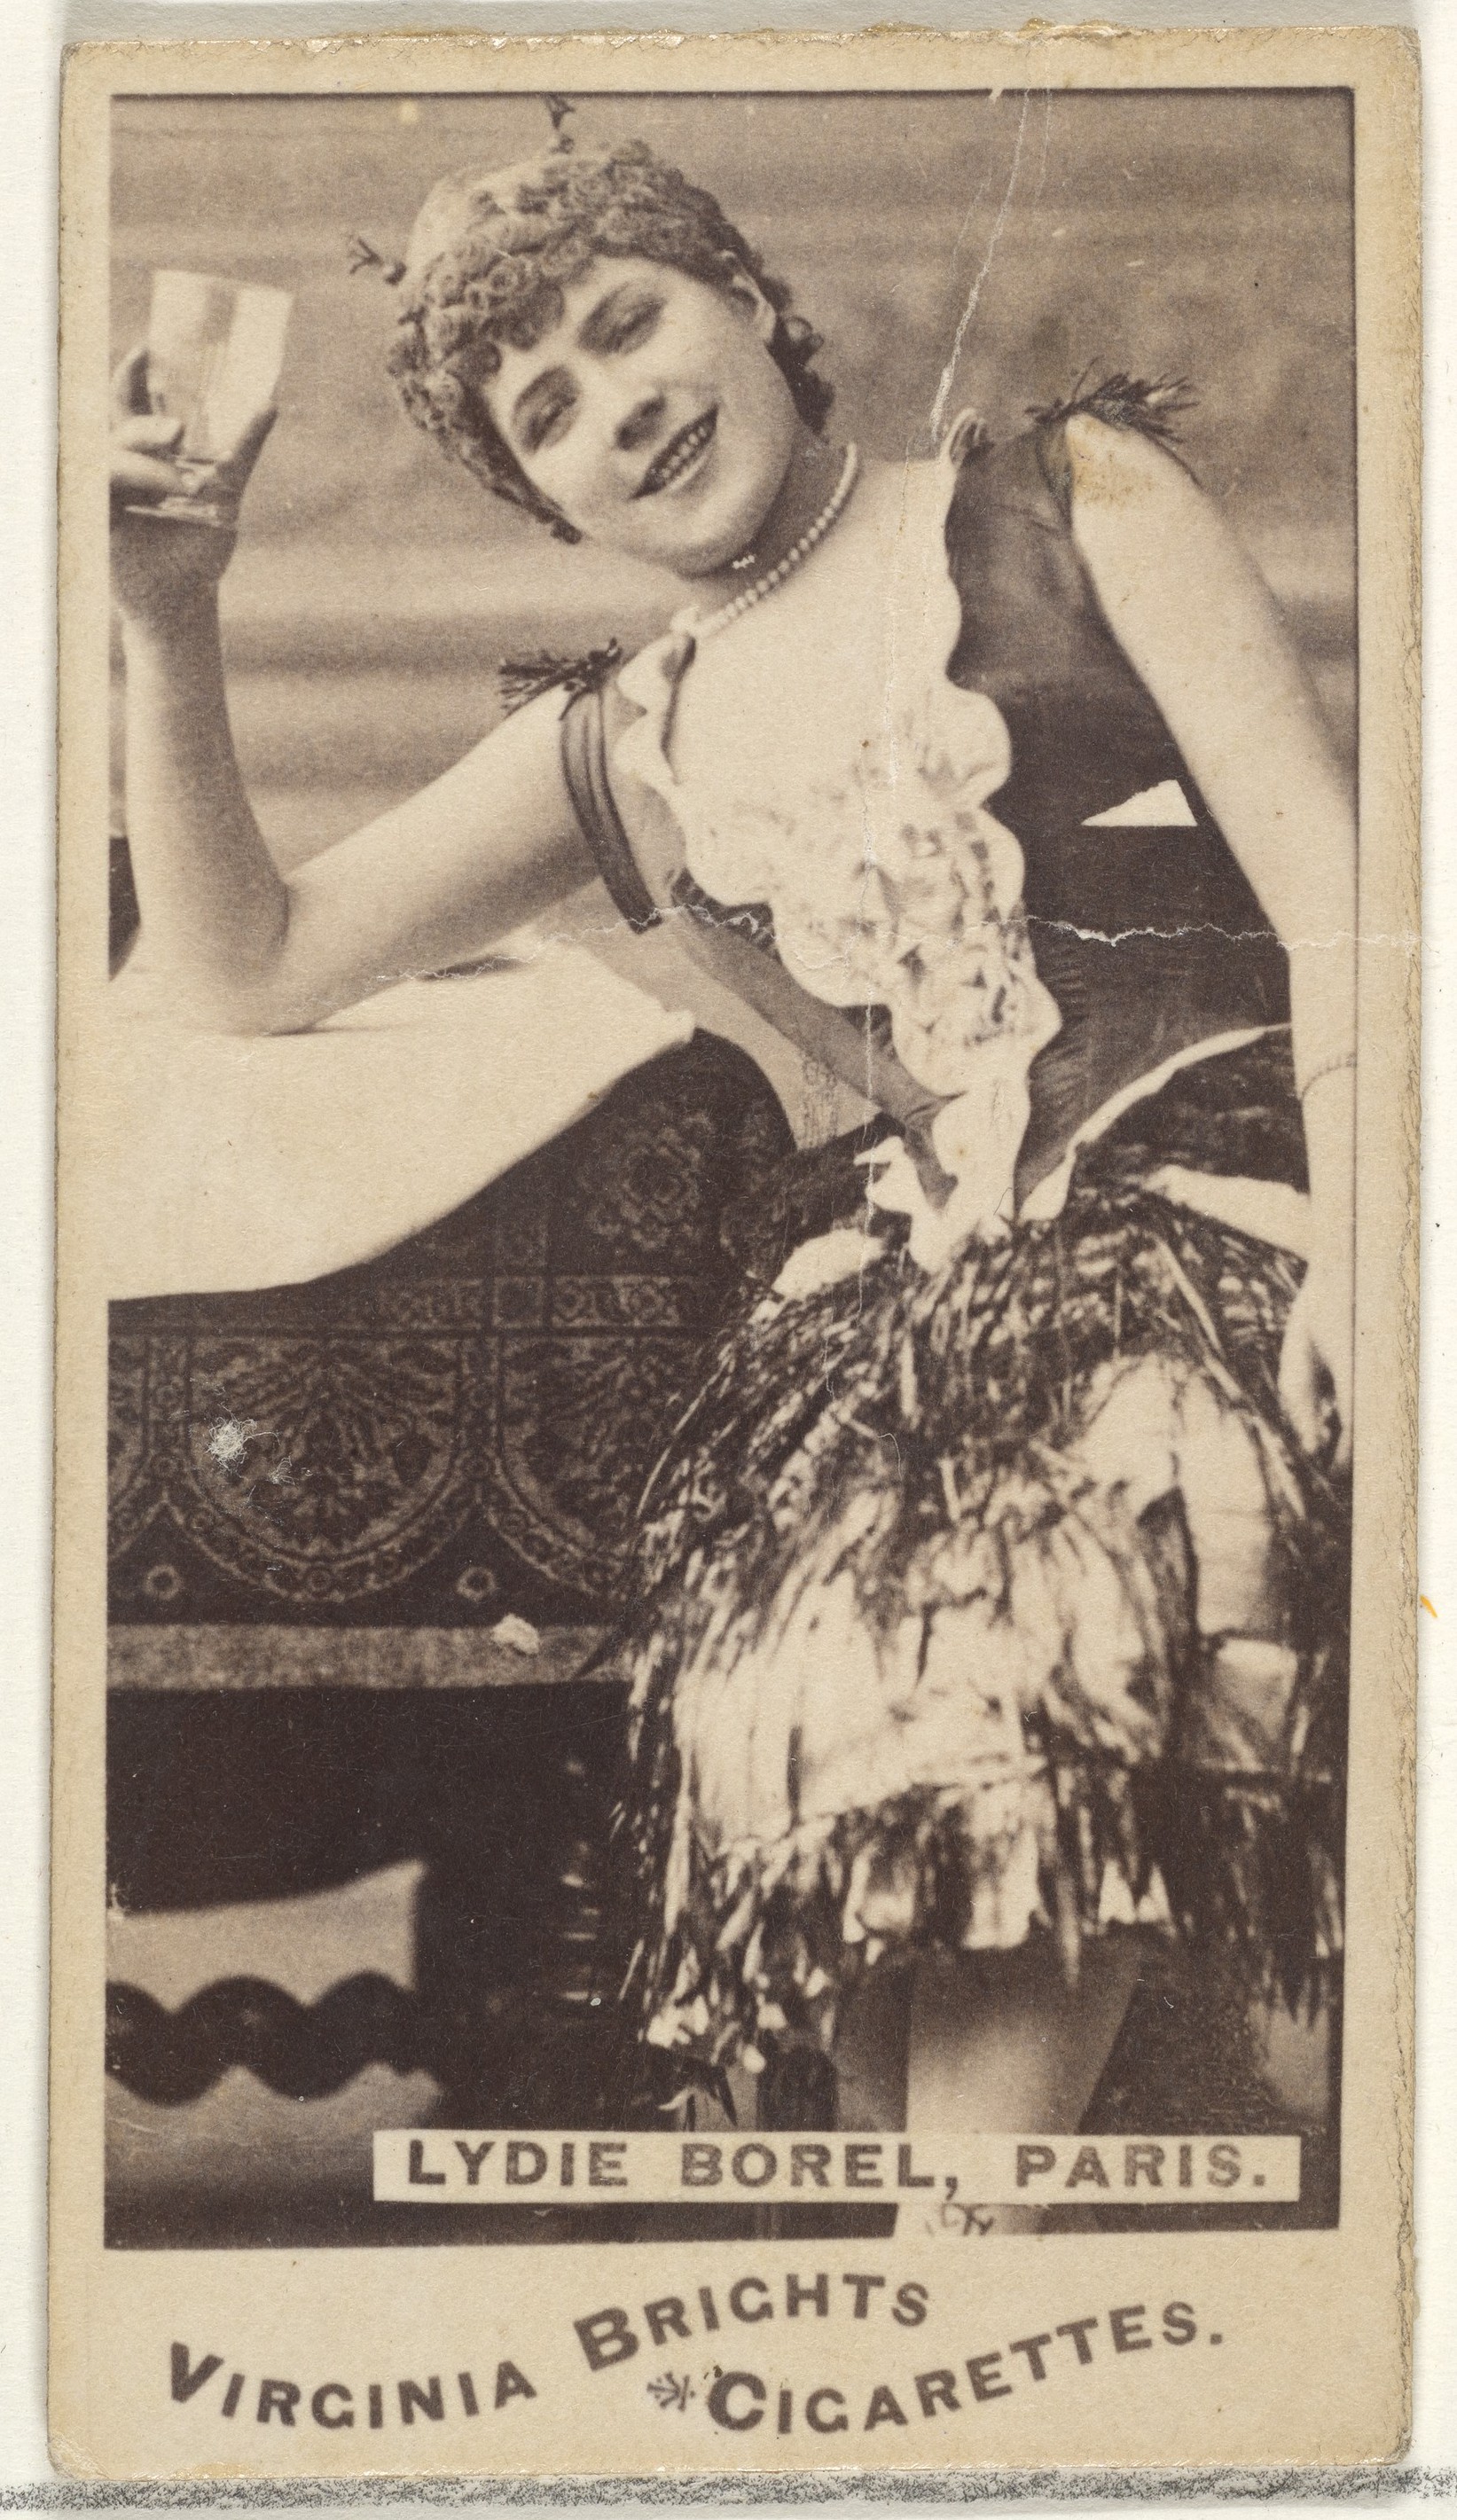 Лиди Борель, Париж, из серии торговых карточек Актёры и актрисы для сигарет Virginia Brights, 1888. Автор Аллен и Гинтер